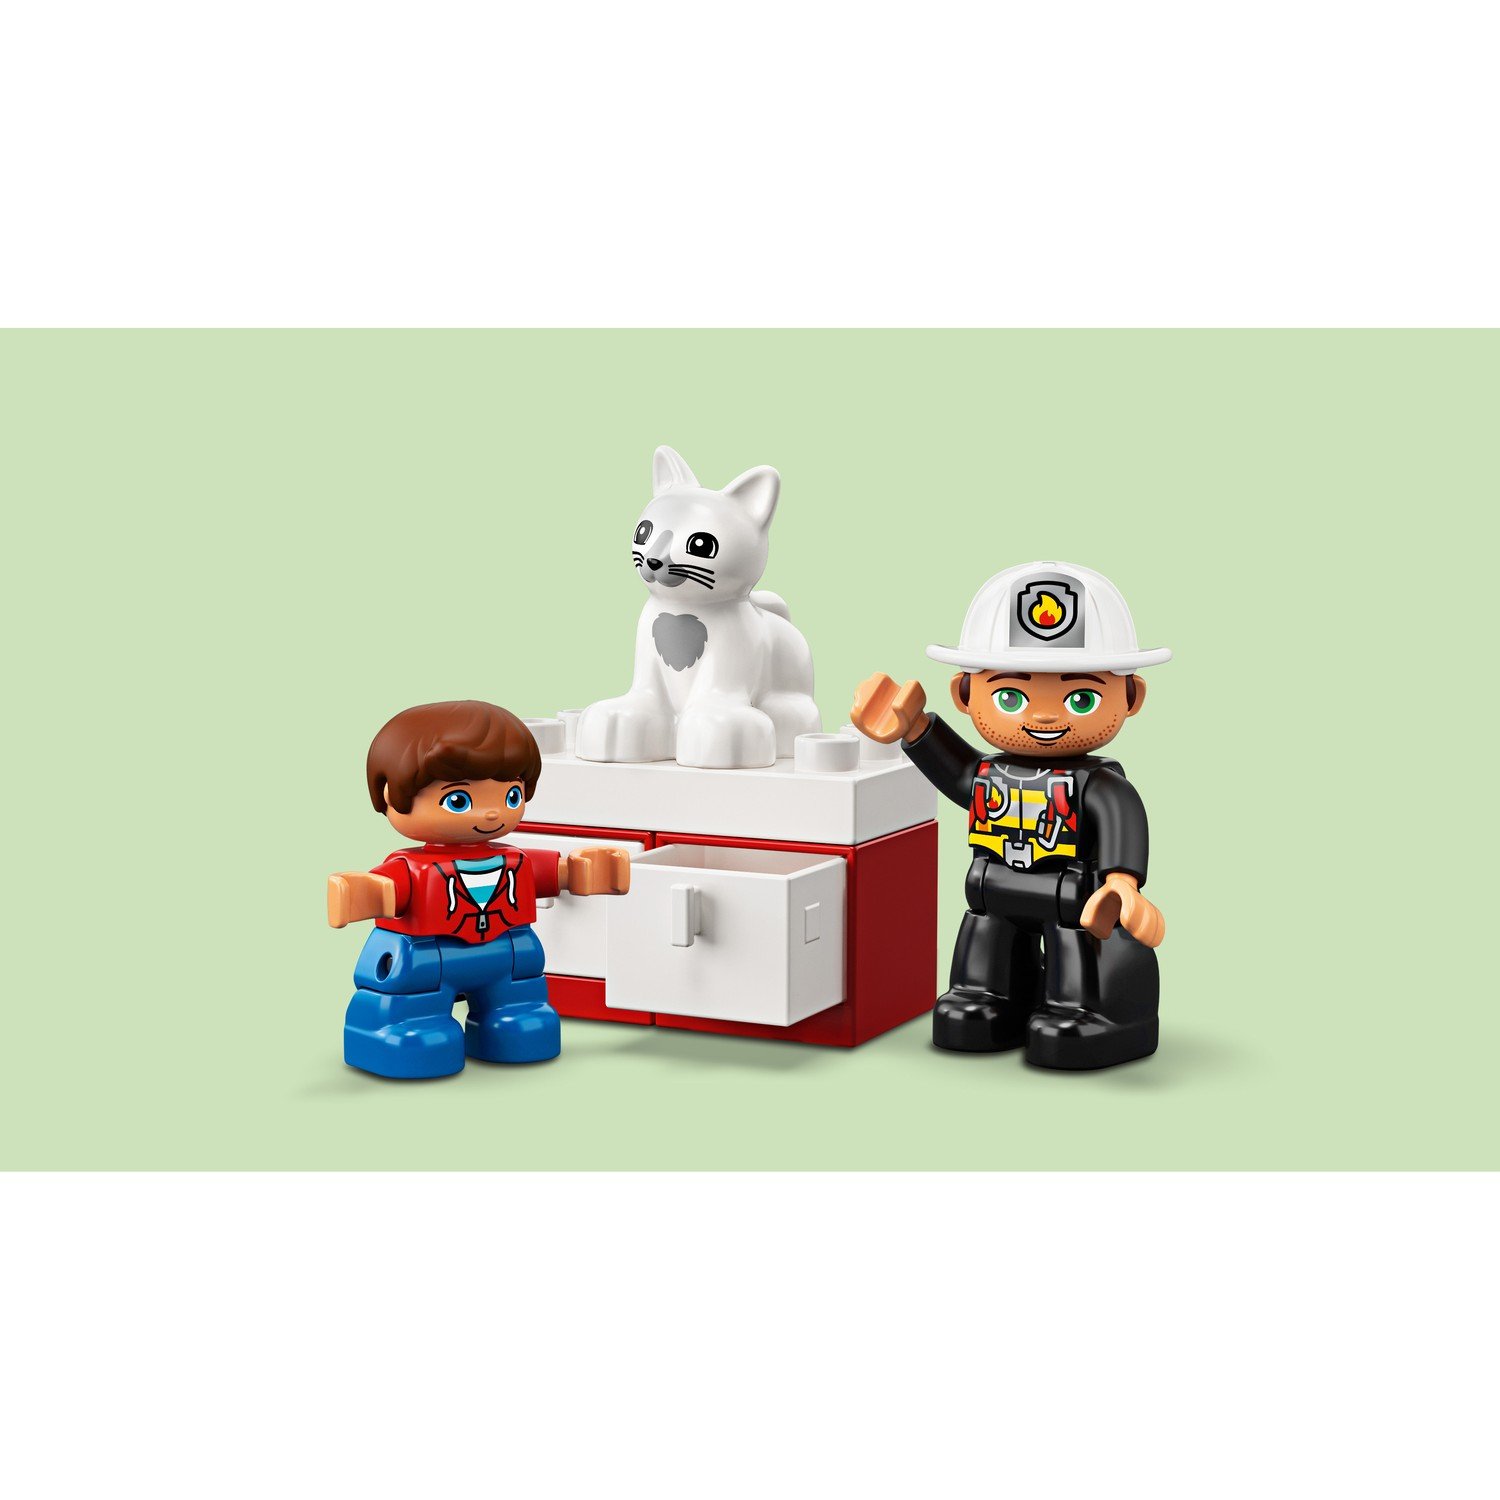 Конструктор LEGO Duplo «Пожарная машина» 10901 / 21 деталь